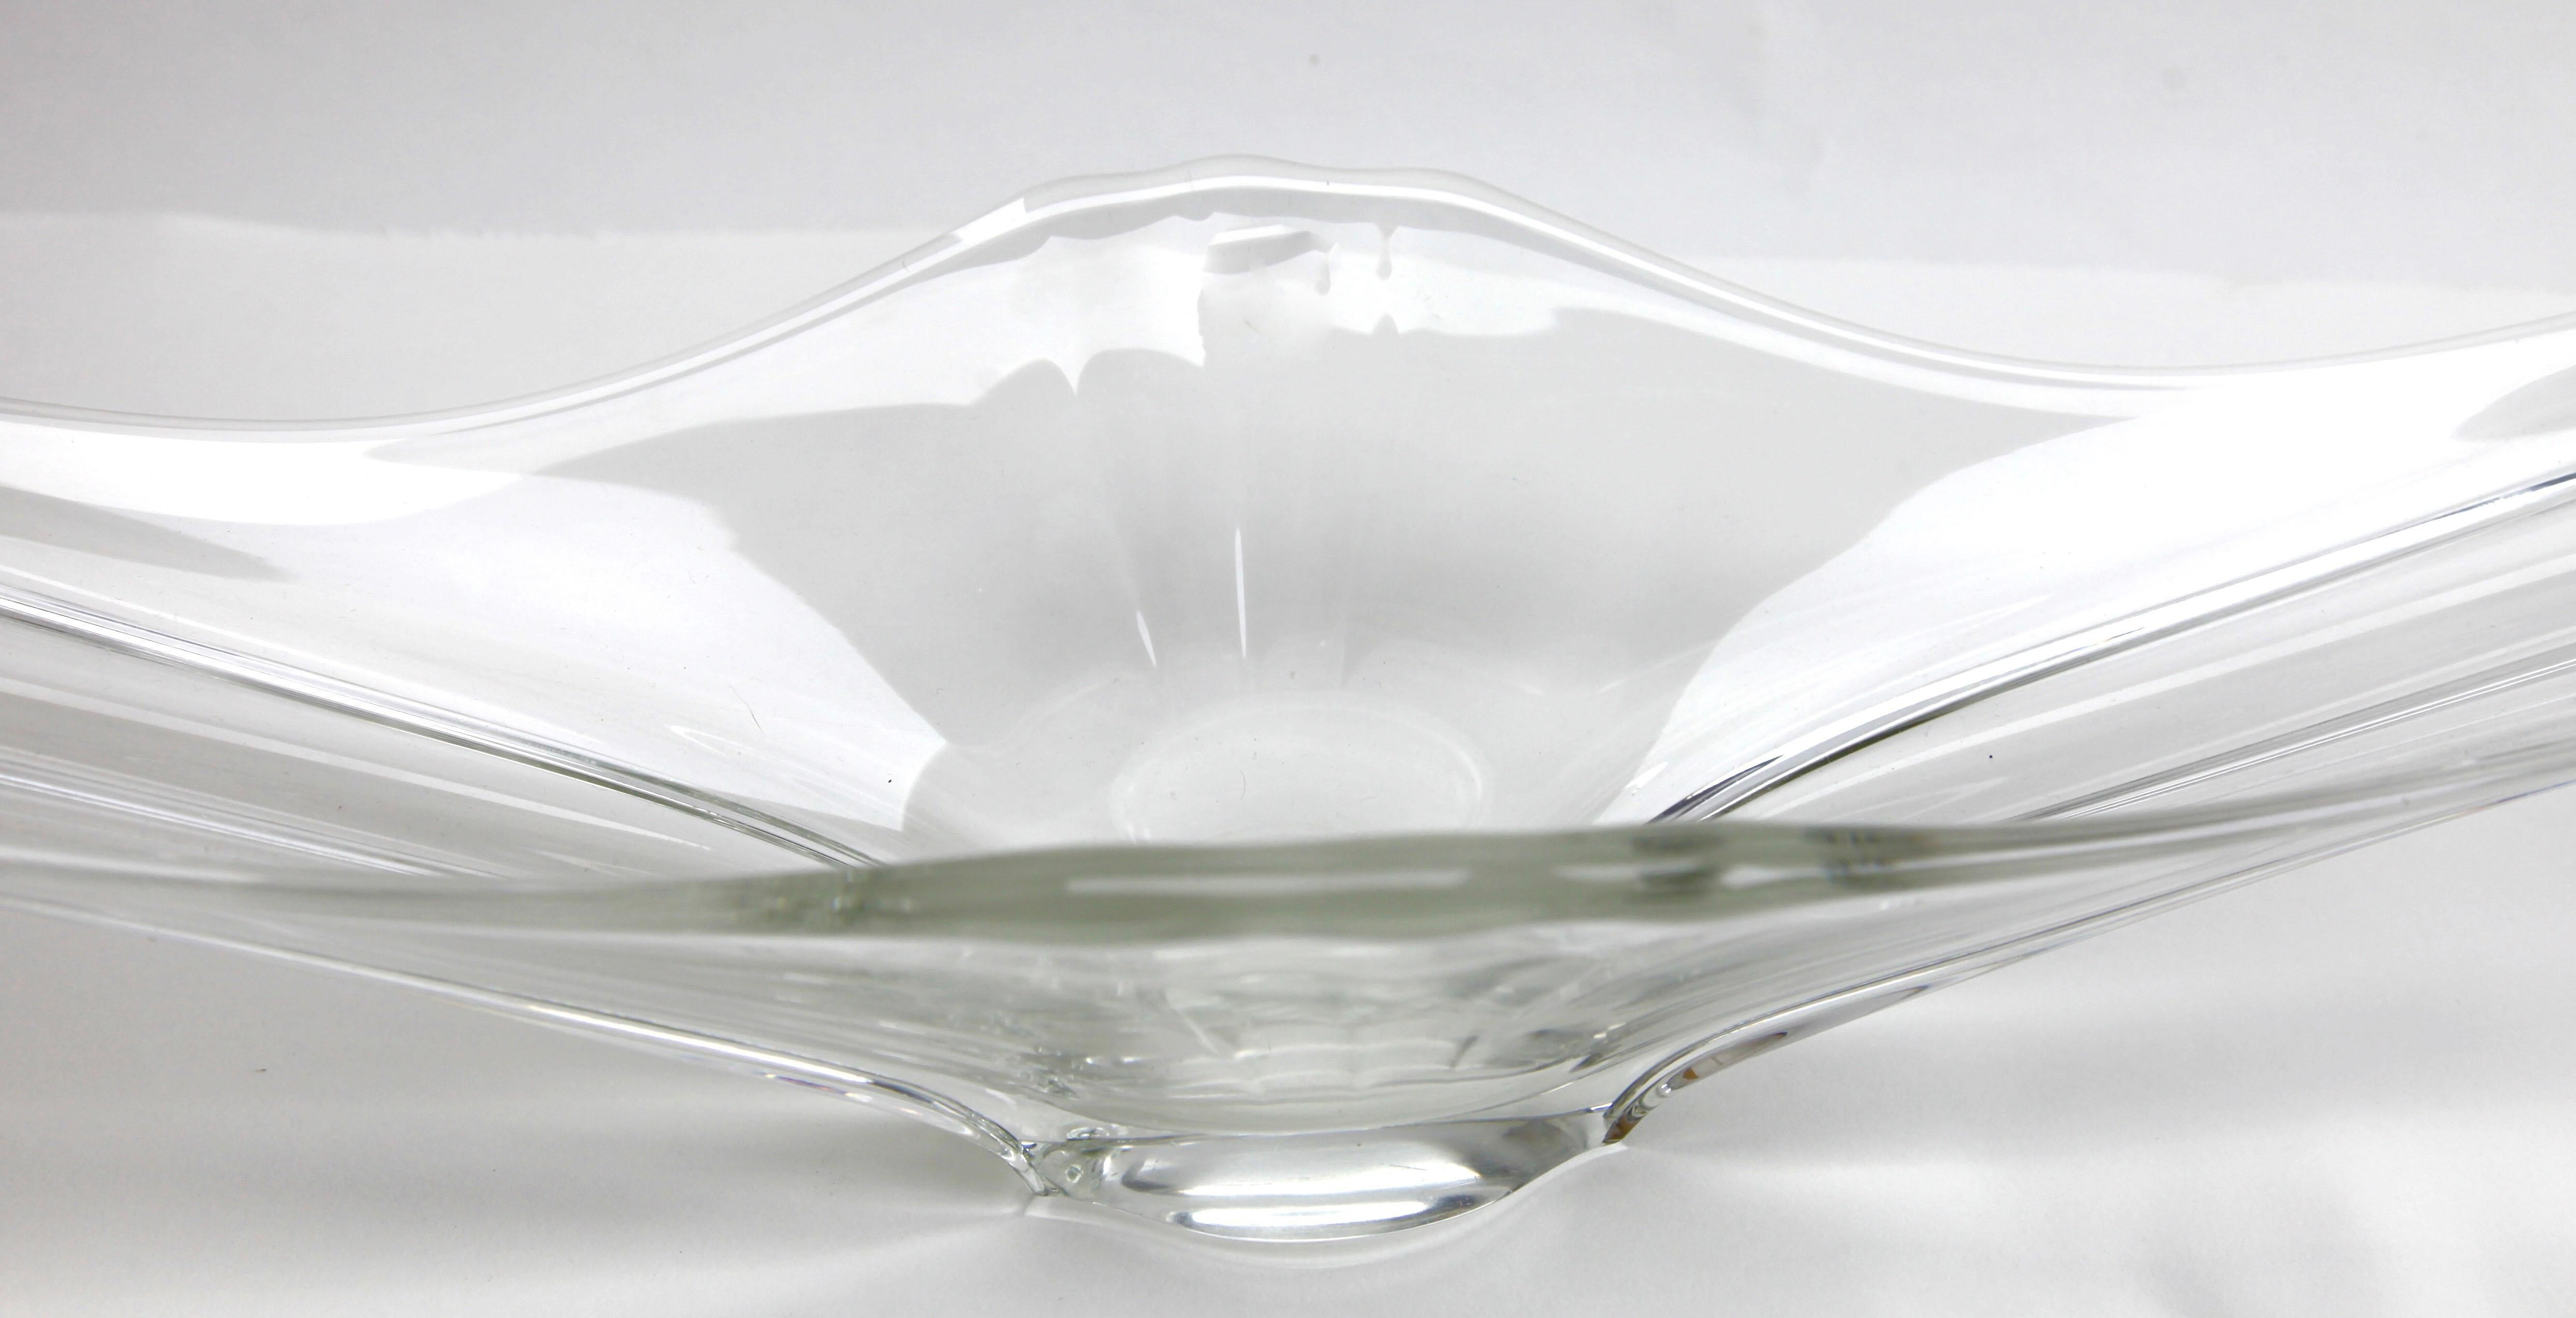 Vieille coupe à fruits Val Saint Lambert en cristal clair. Cet article peut être utilisé comme centre de table ou sur une cheminée.
Il possède deux grandes 